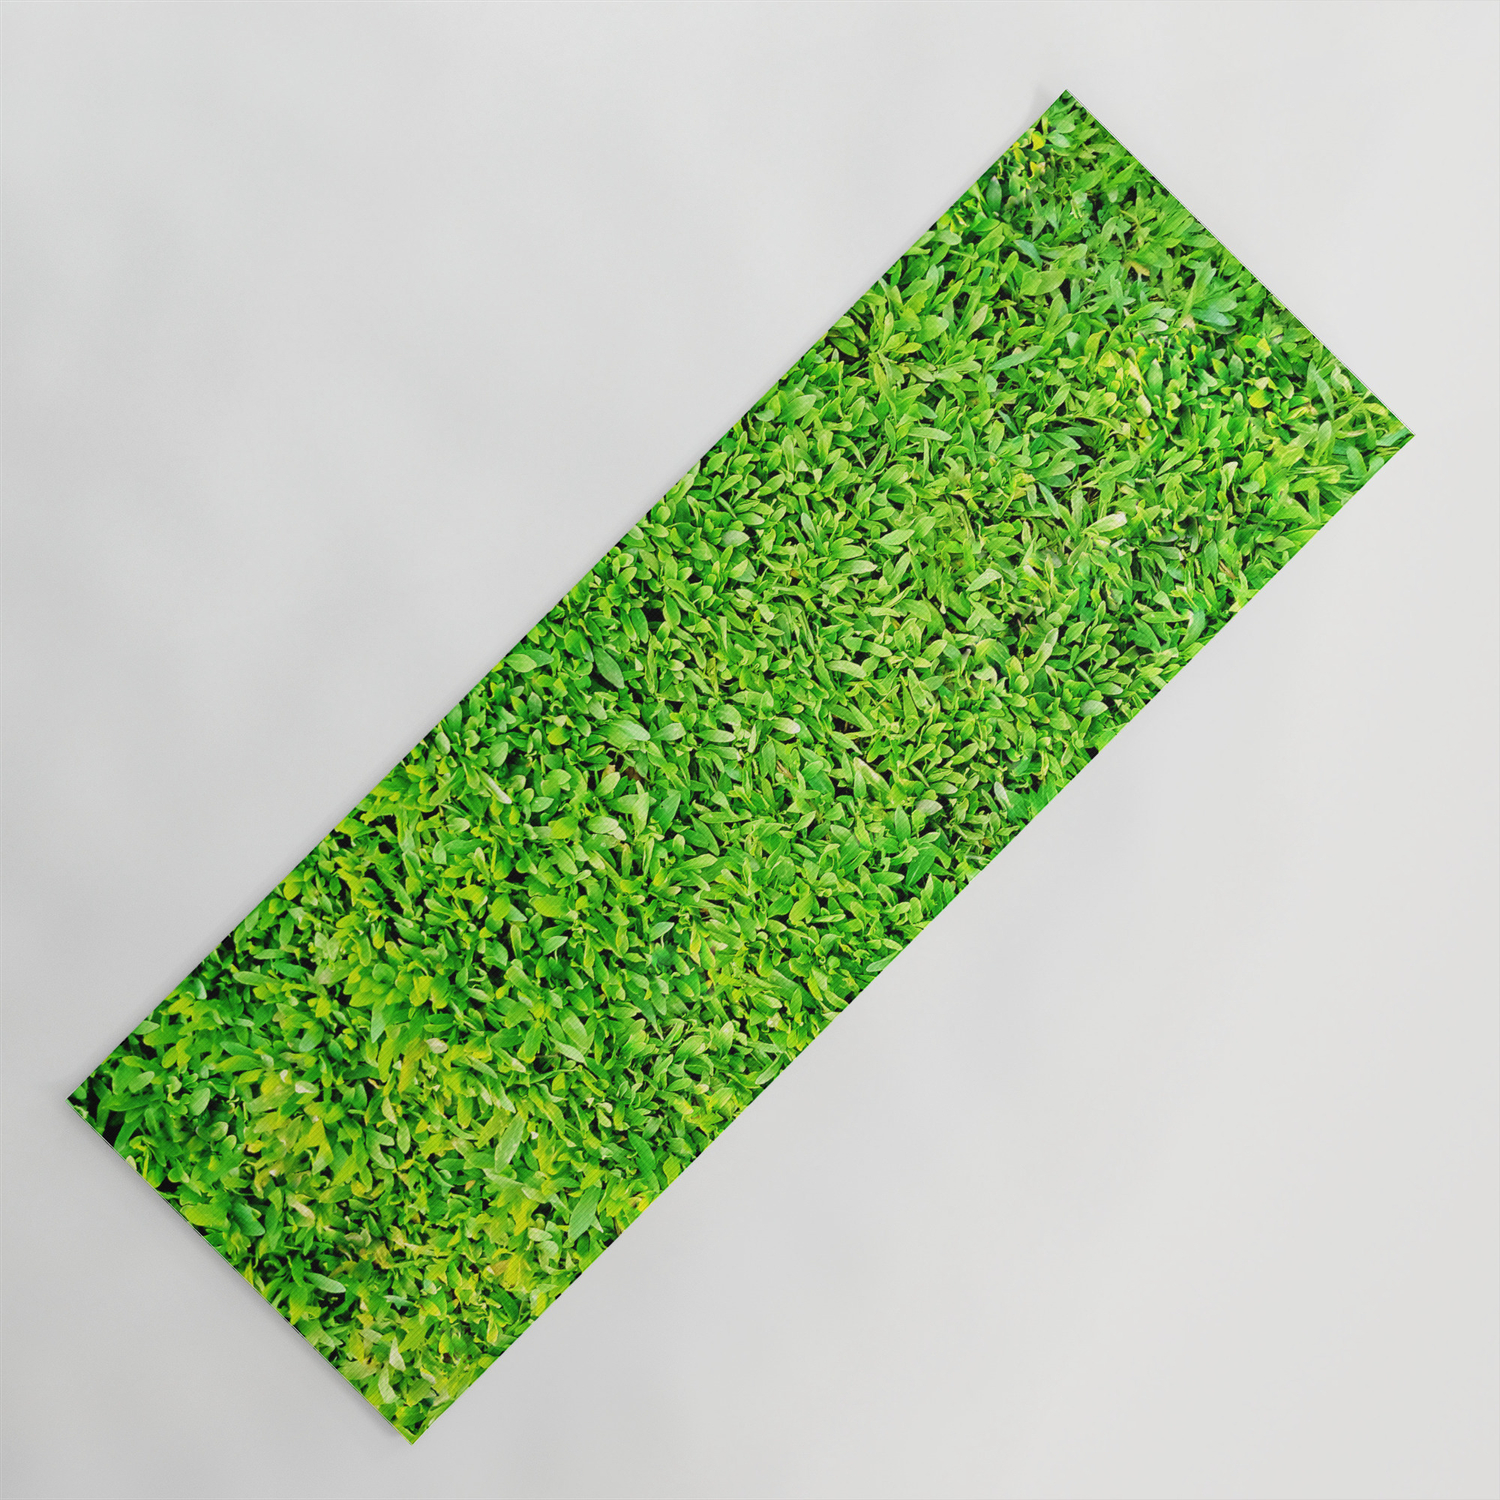 Hoofdkwartier fluit Leraren dag Texture of grass Yoga Mat by White Spirit | Society6